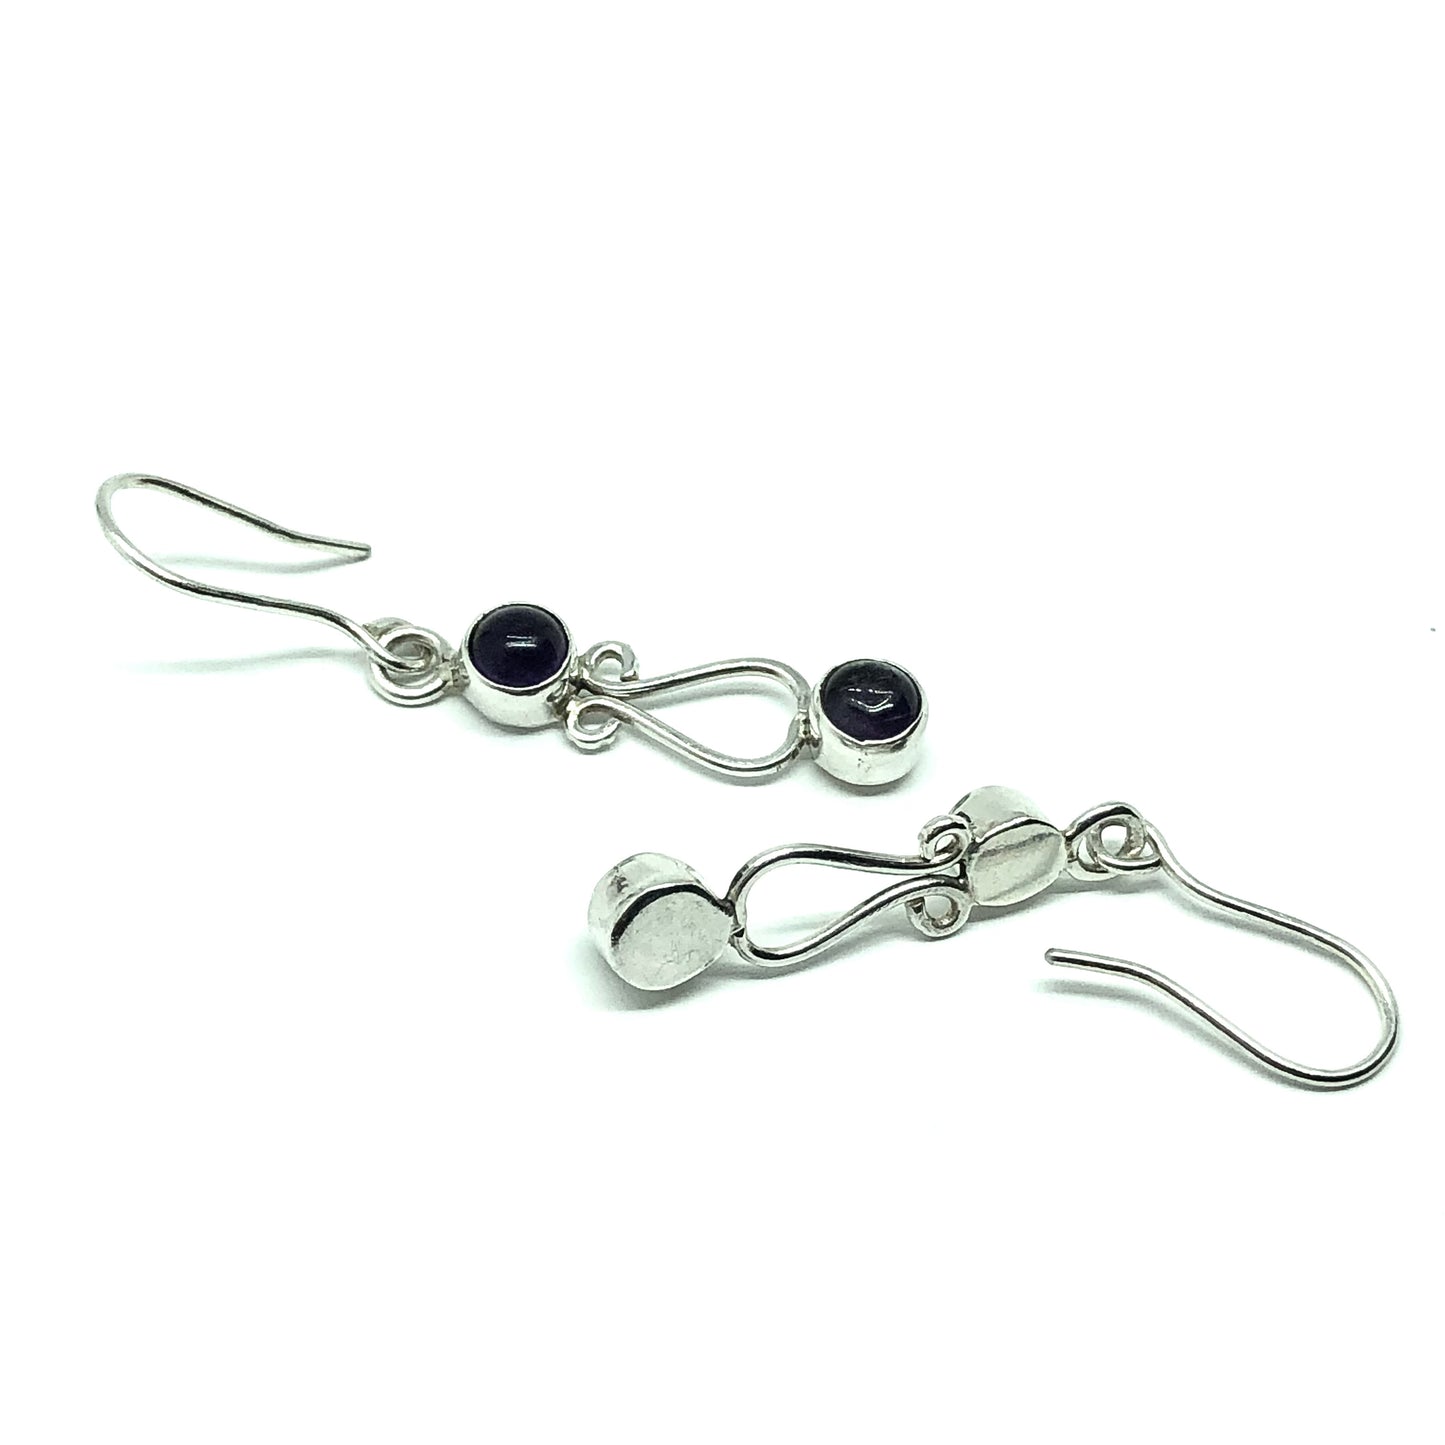 Jewelry | Earrings Sterling Silver Curvaceous Purple Amethyst Gem Dangle Earrings